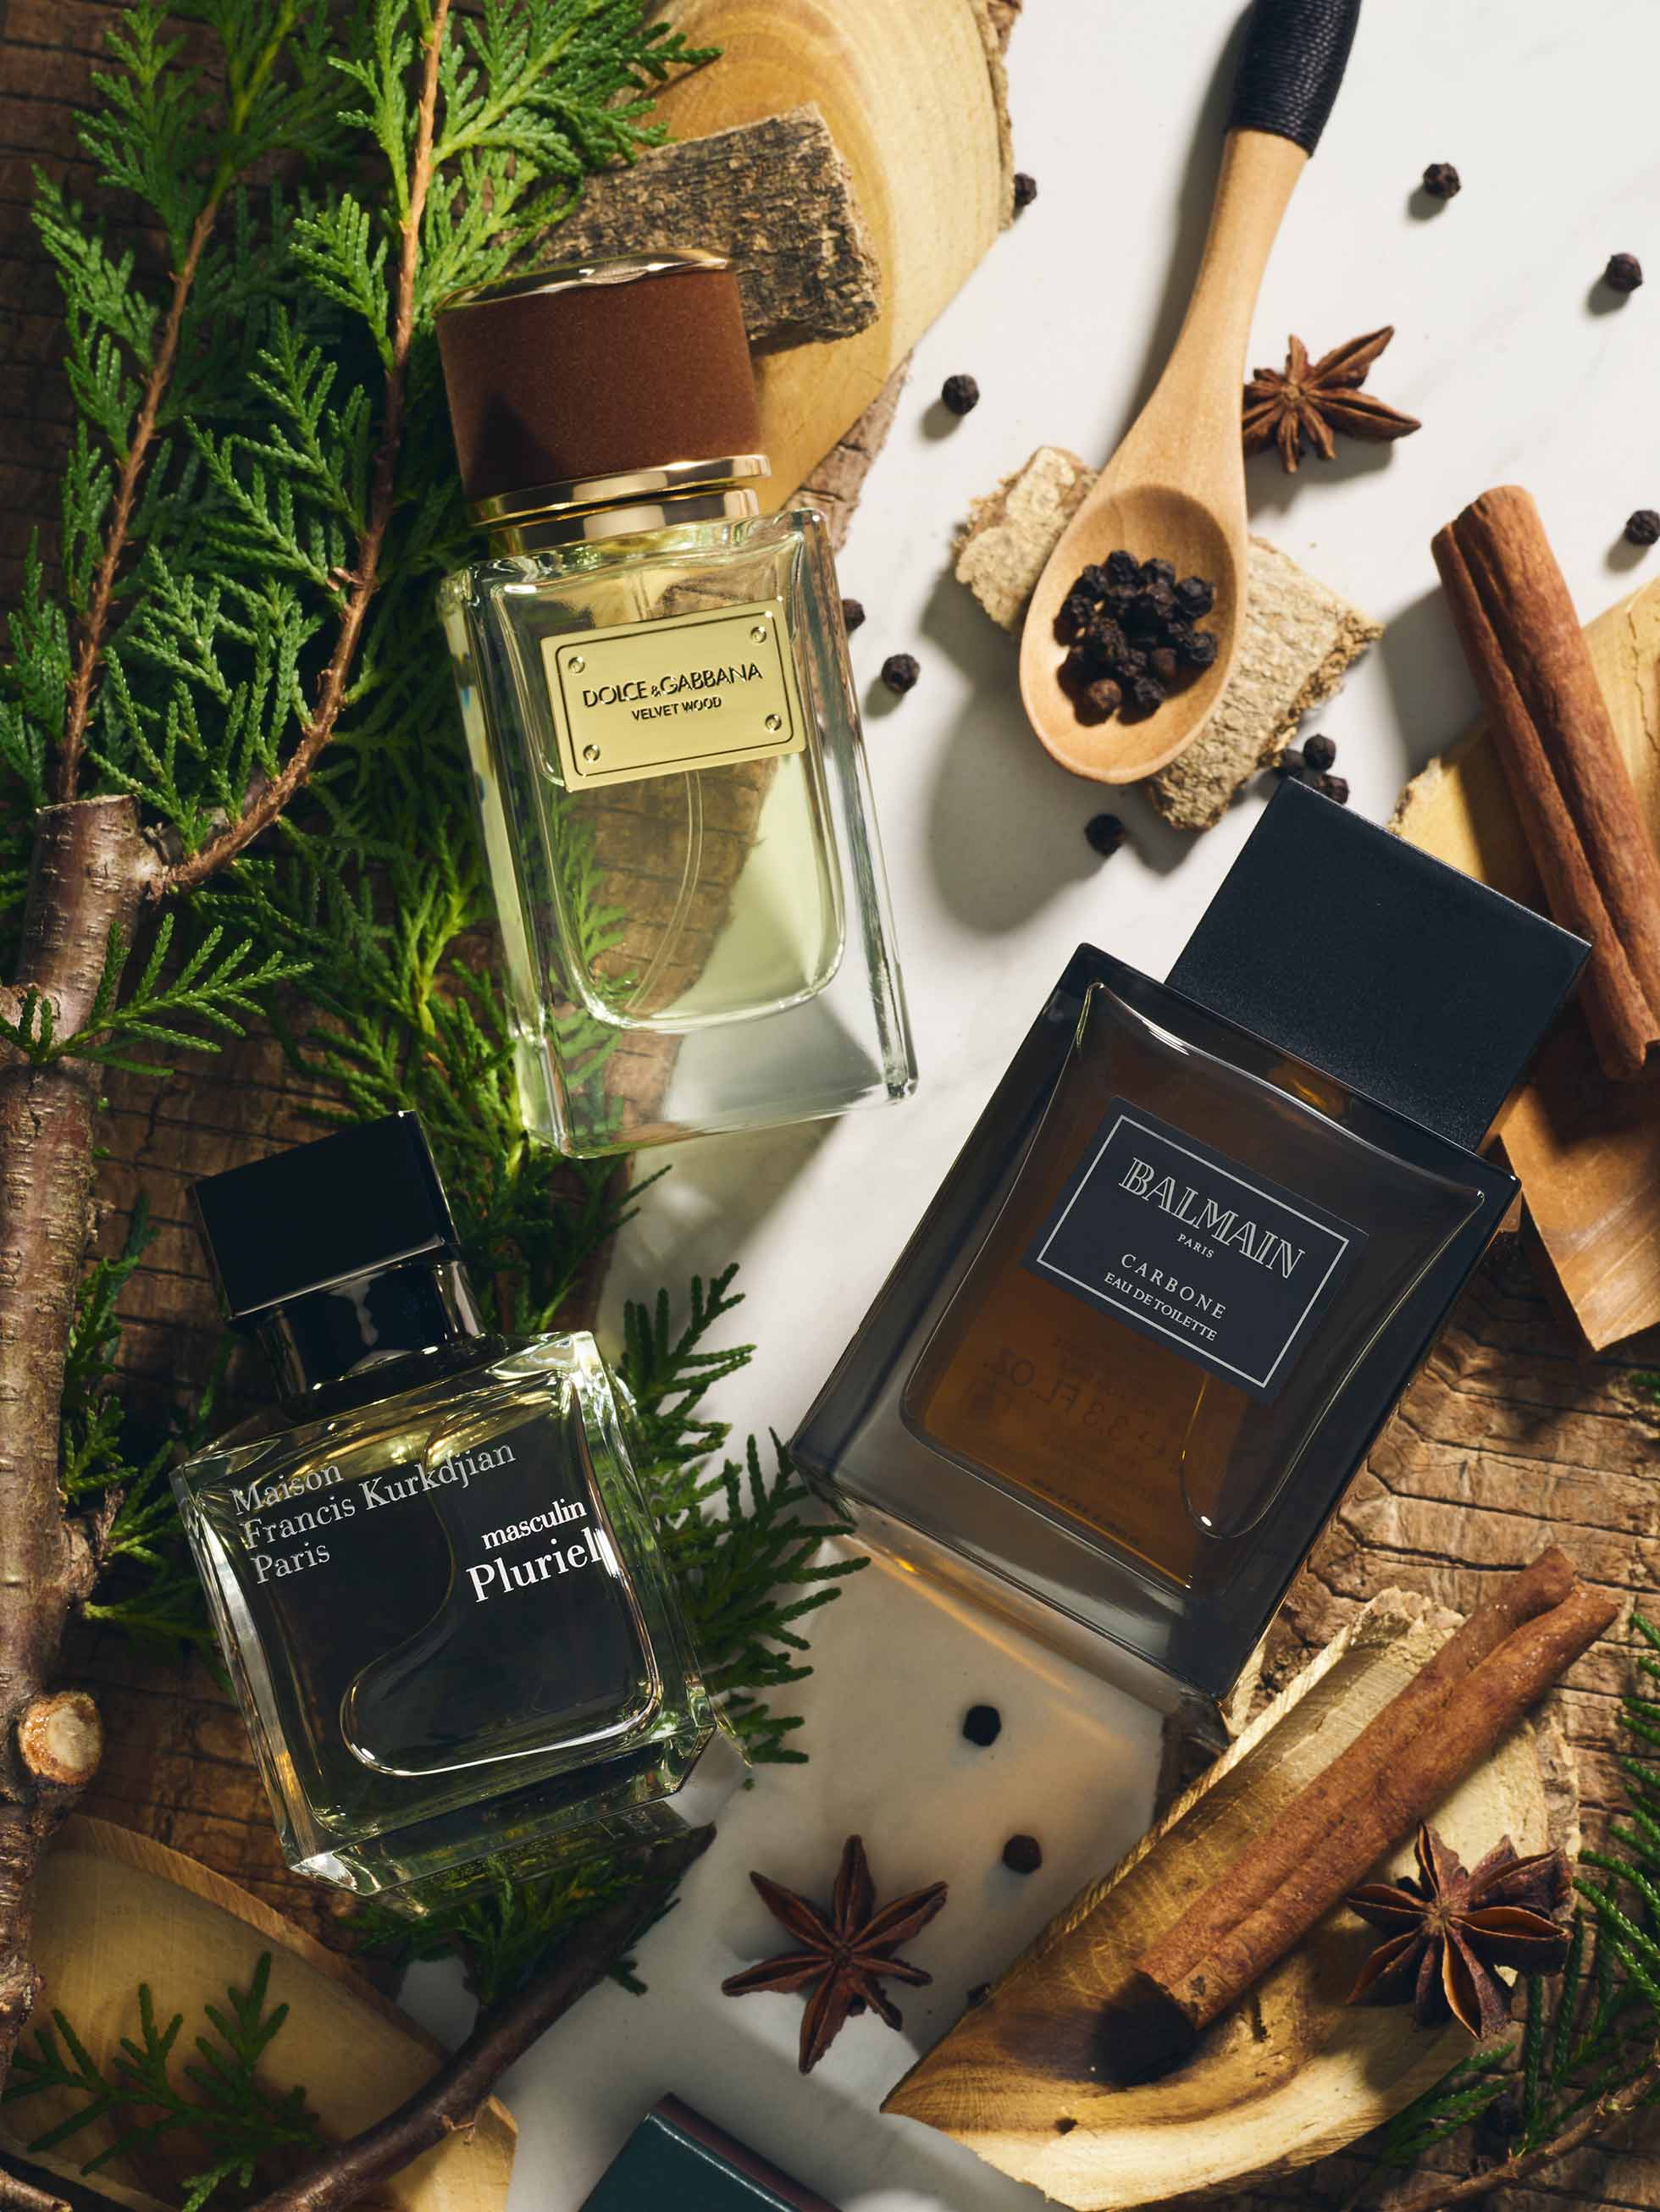 Woody fragrances from Maison Francis Kurkdjian available at Joyce Beauty, Dolce & Gabbana available at Harvey Nichols and Balmain